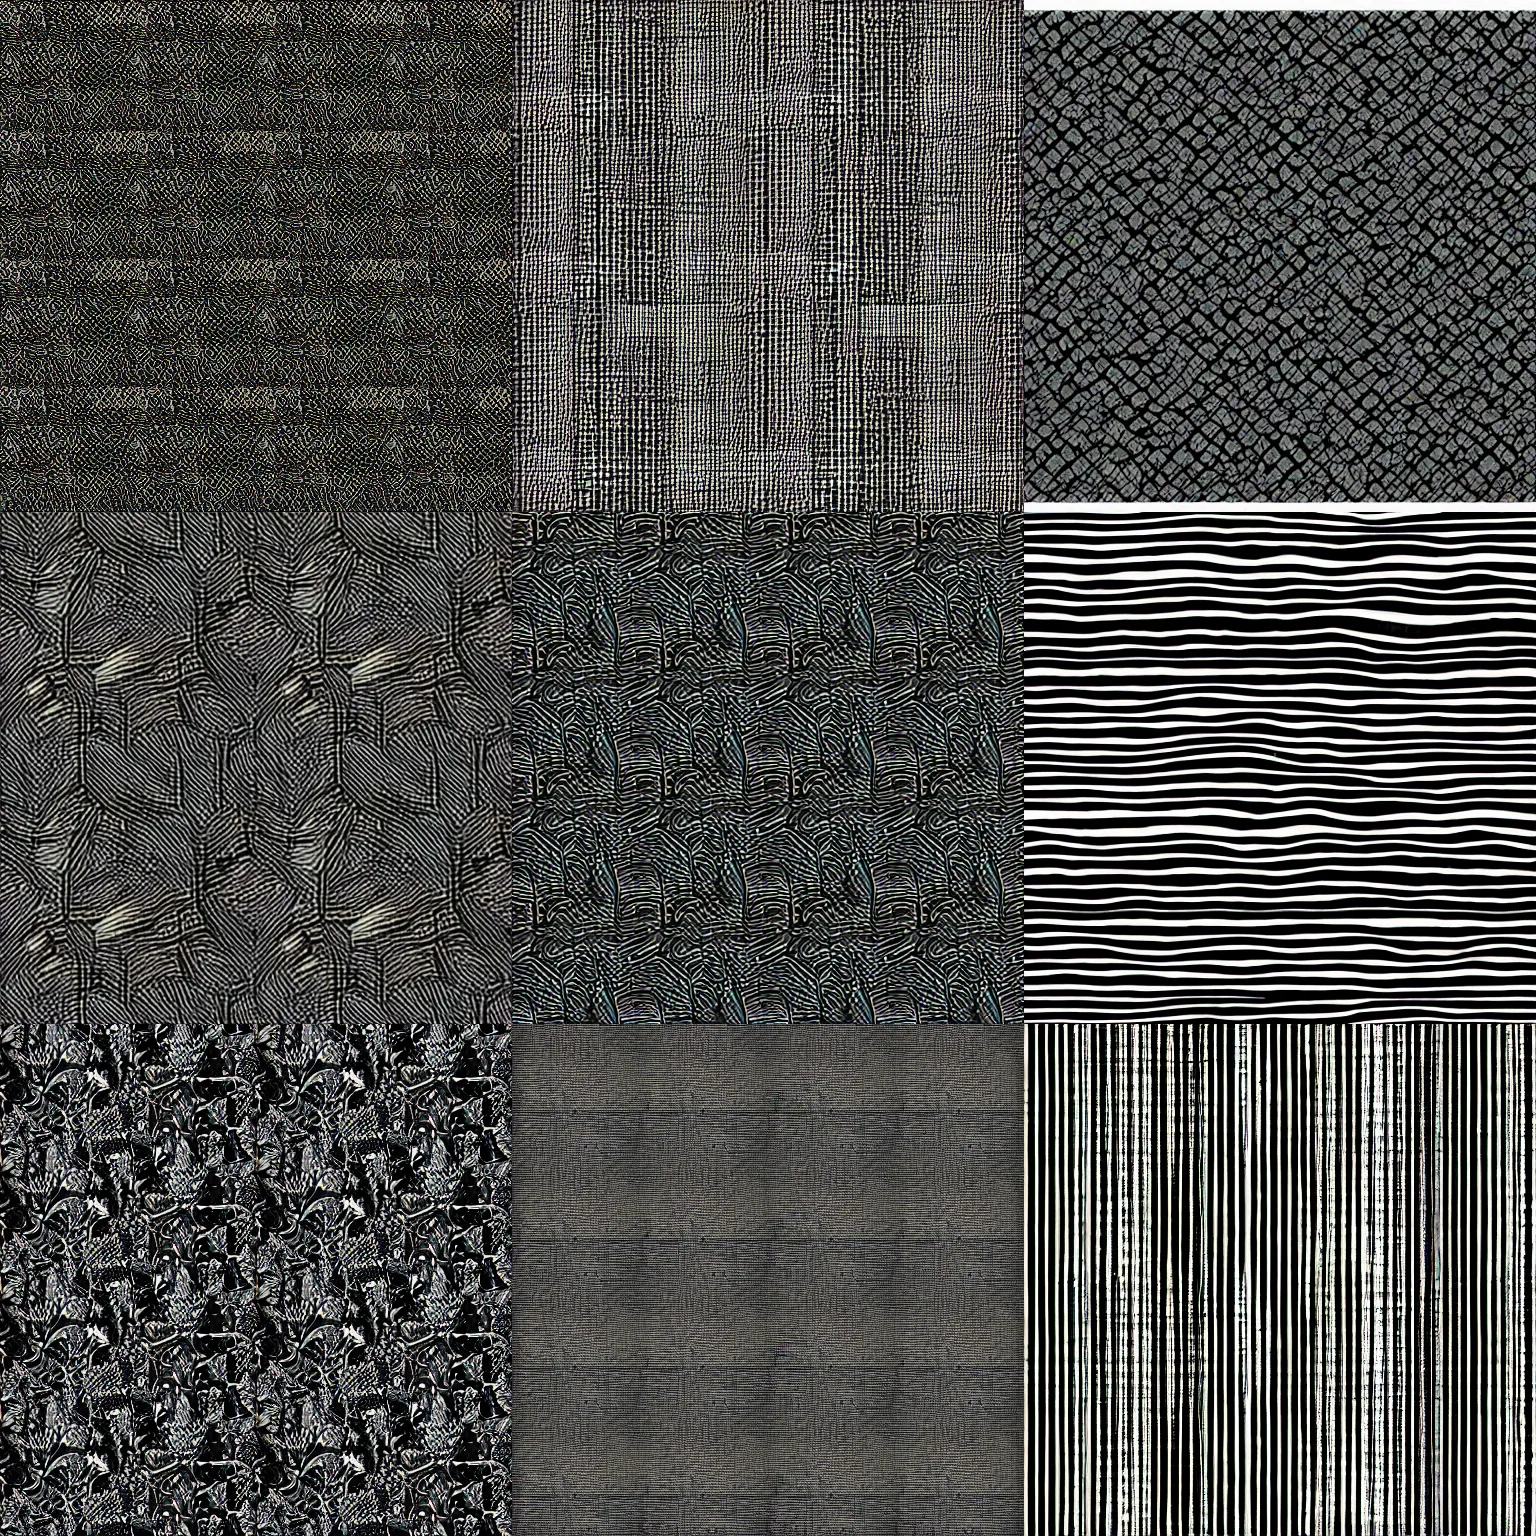 Prompt: vanta black repeating texture